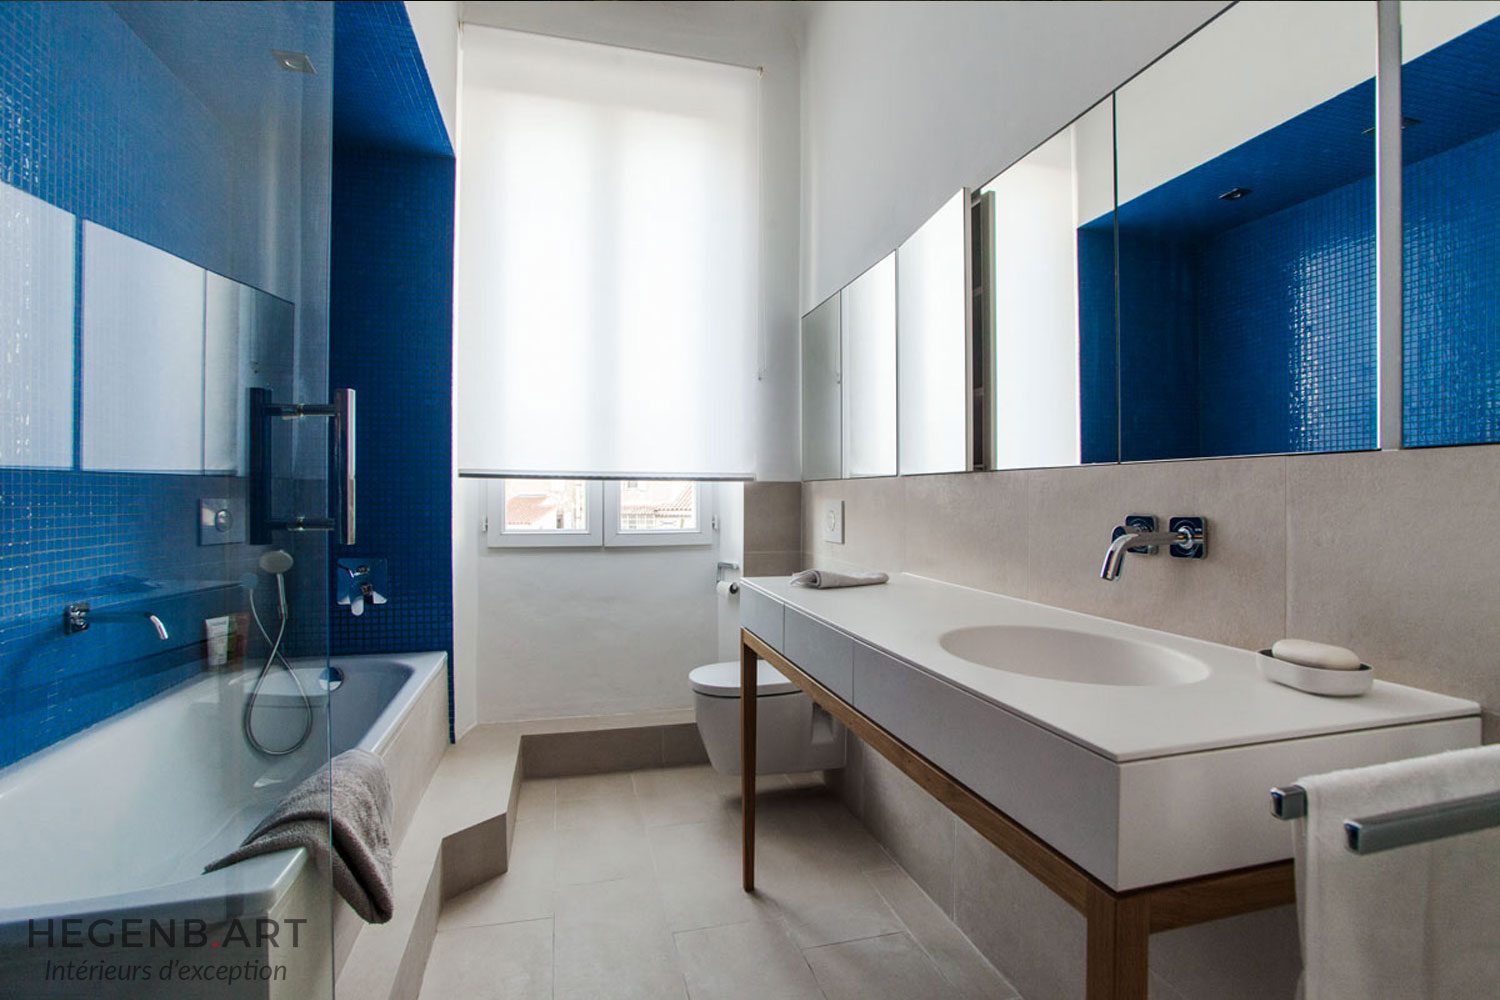 Aménagement d'une salle de bain design Image